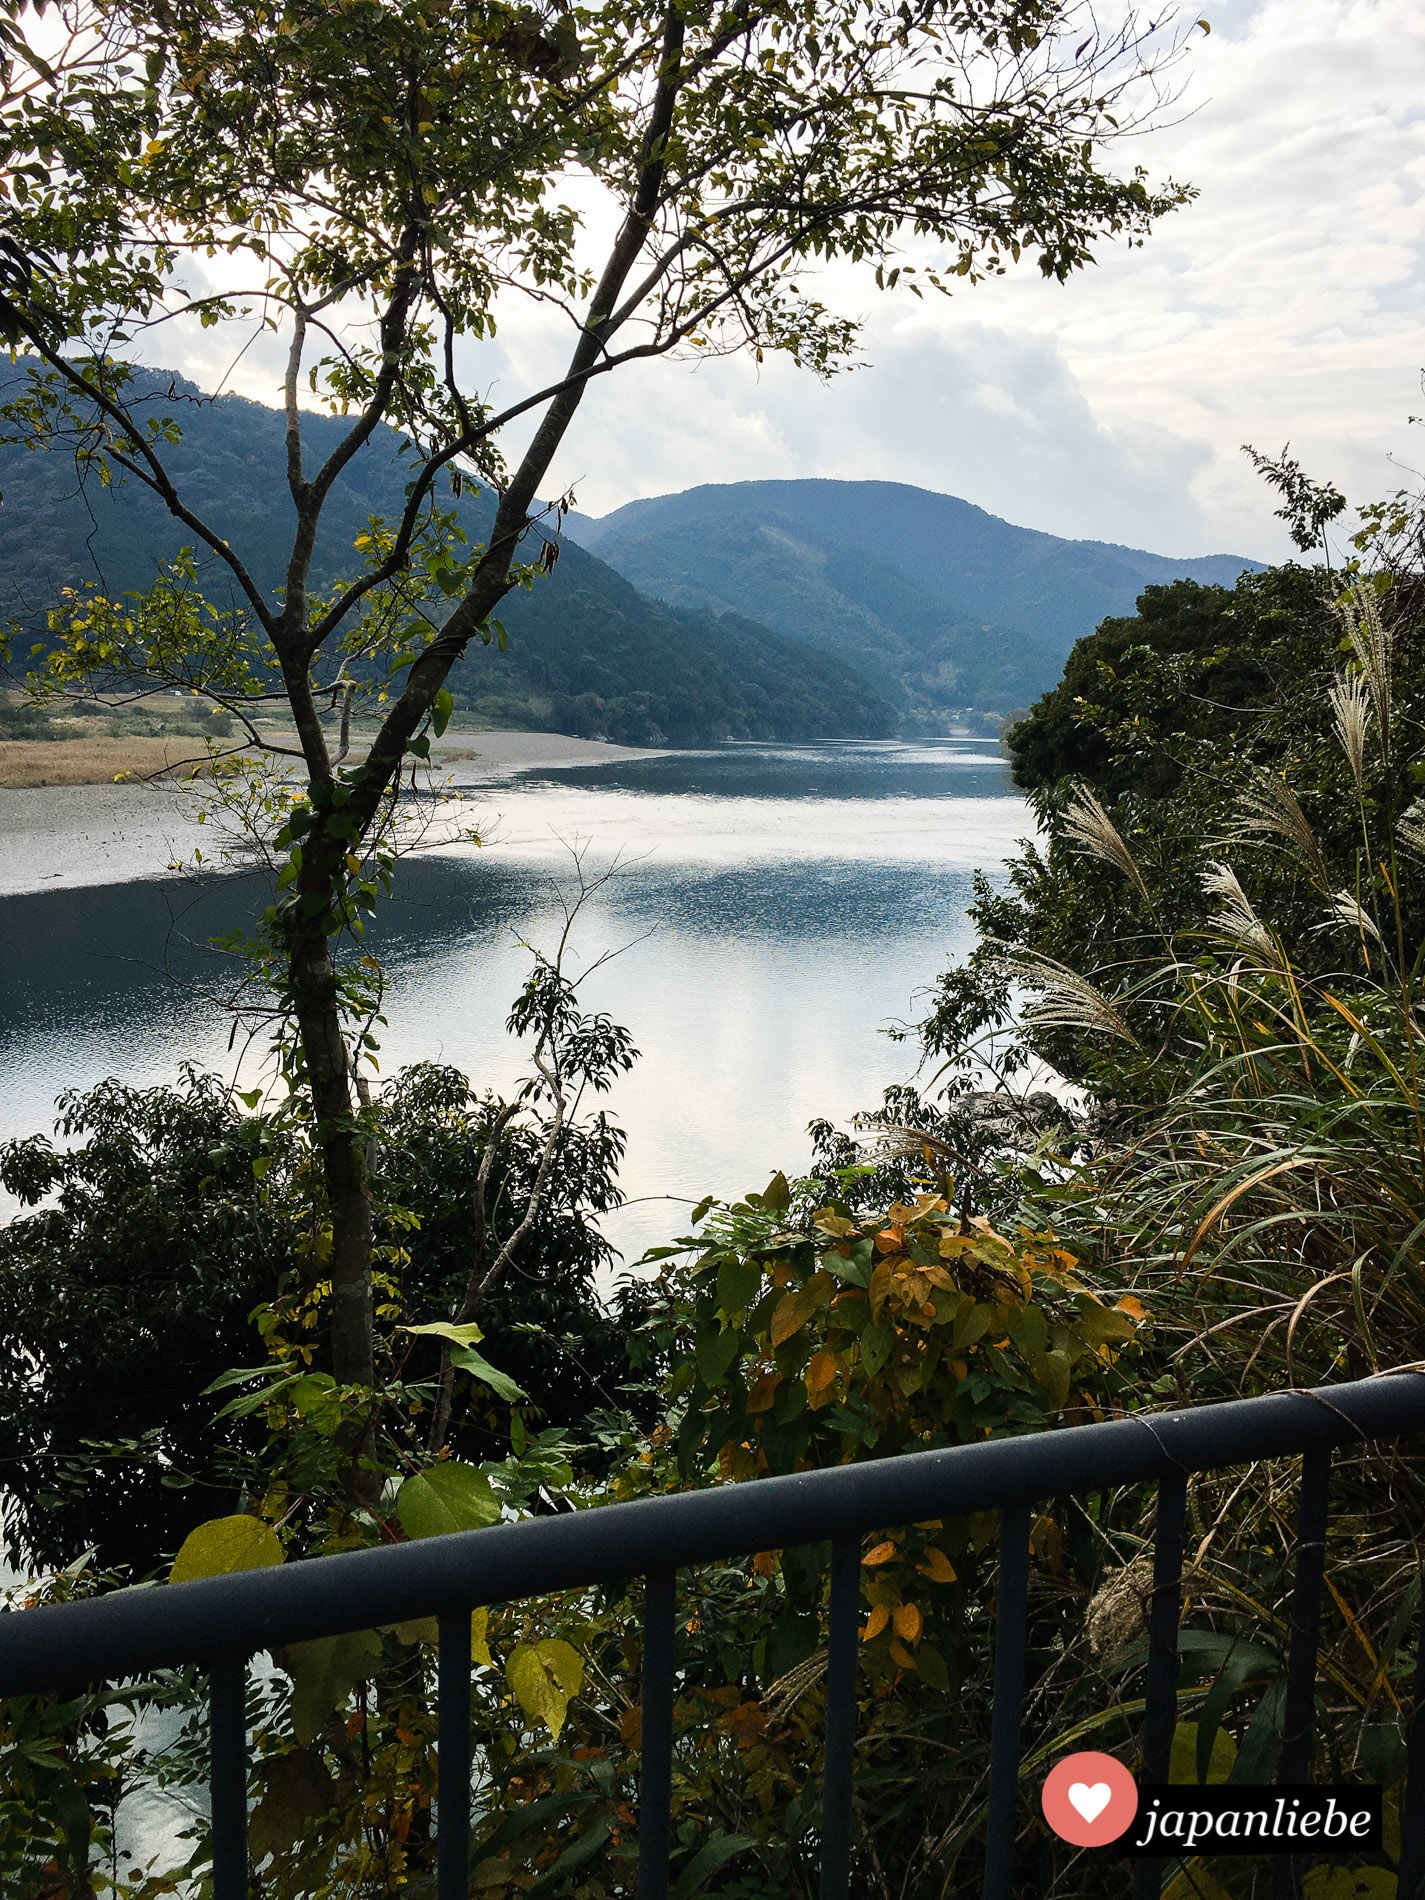 Der Shimanto-Fluss, angeblich Japans letzter wilder Fluss ohne Staudämme oder künstliche Befestigungen.